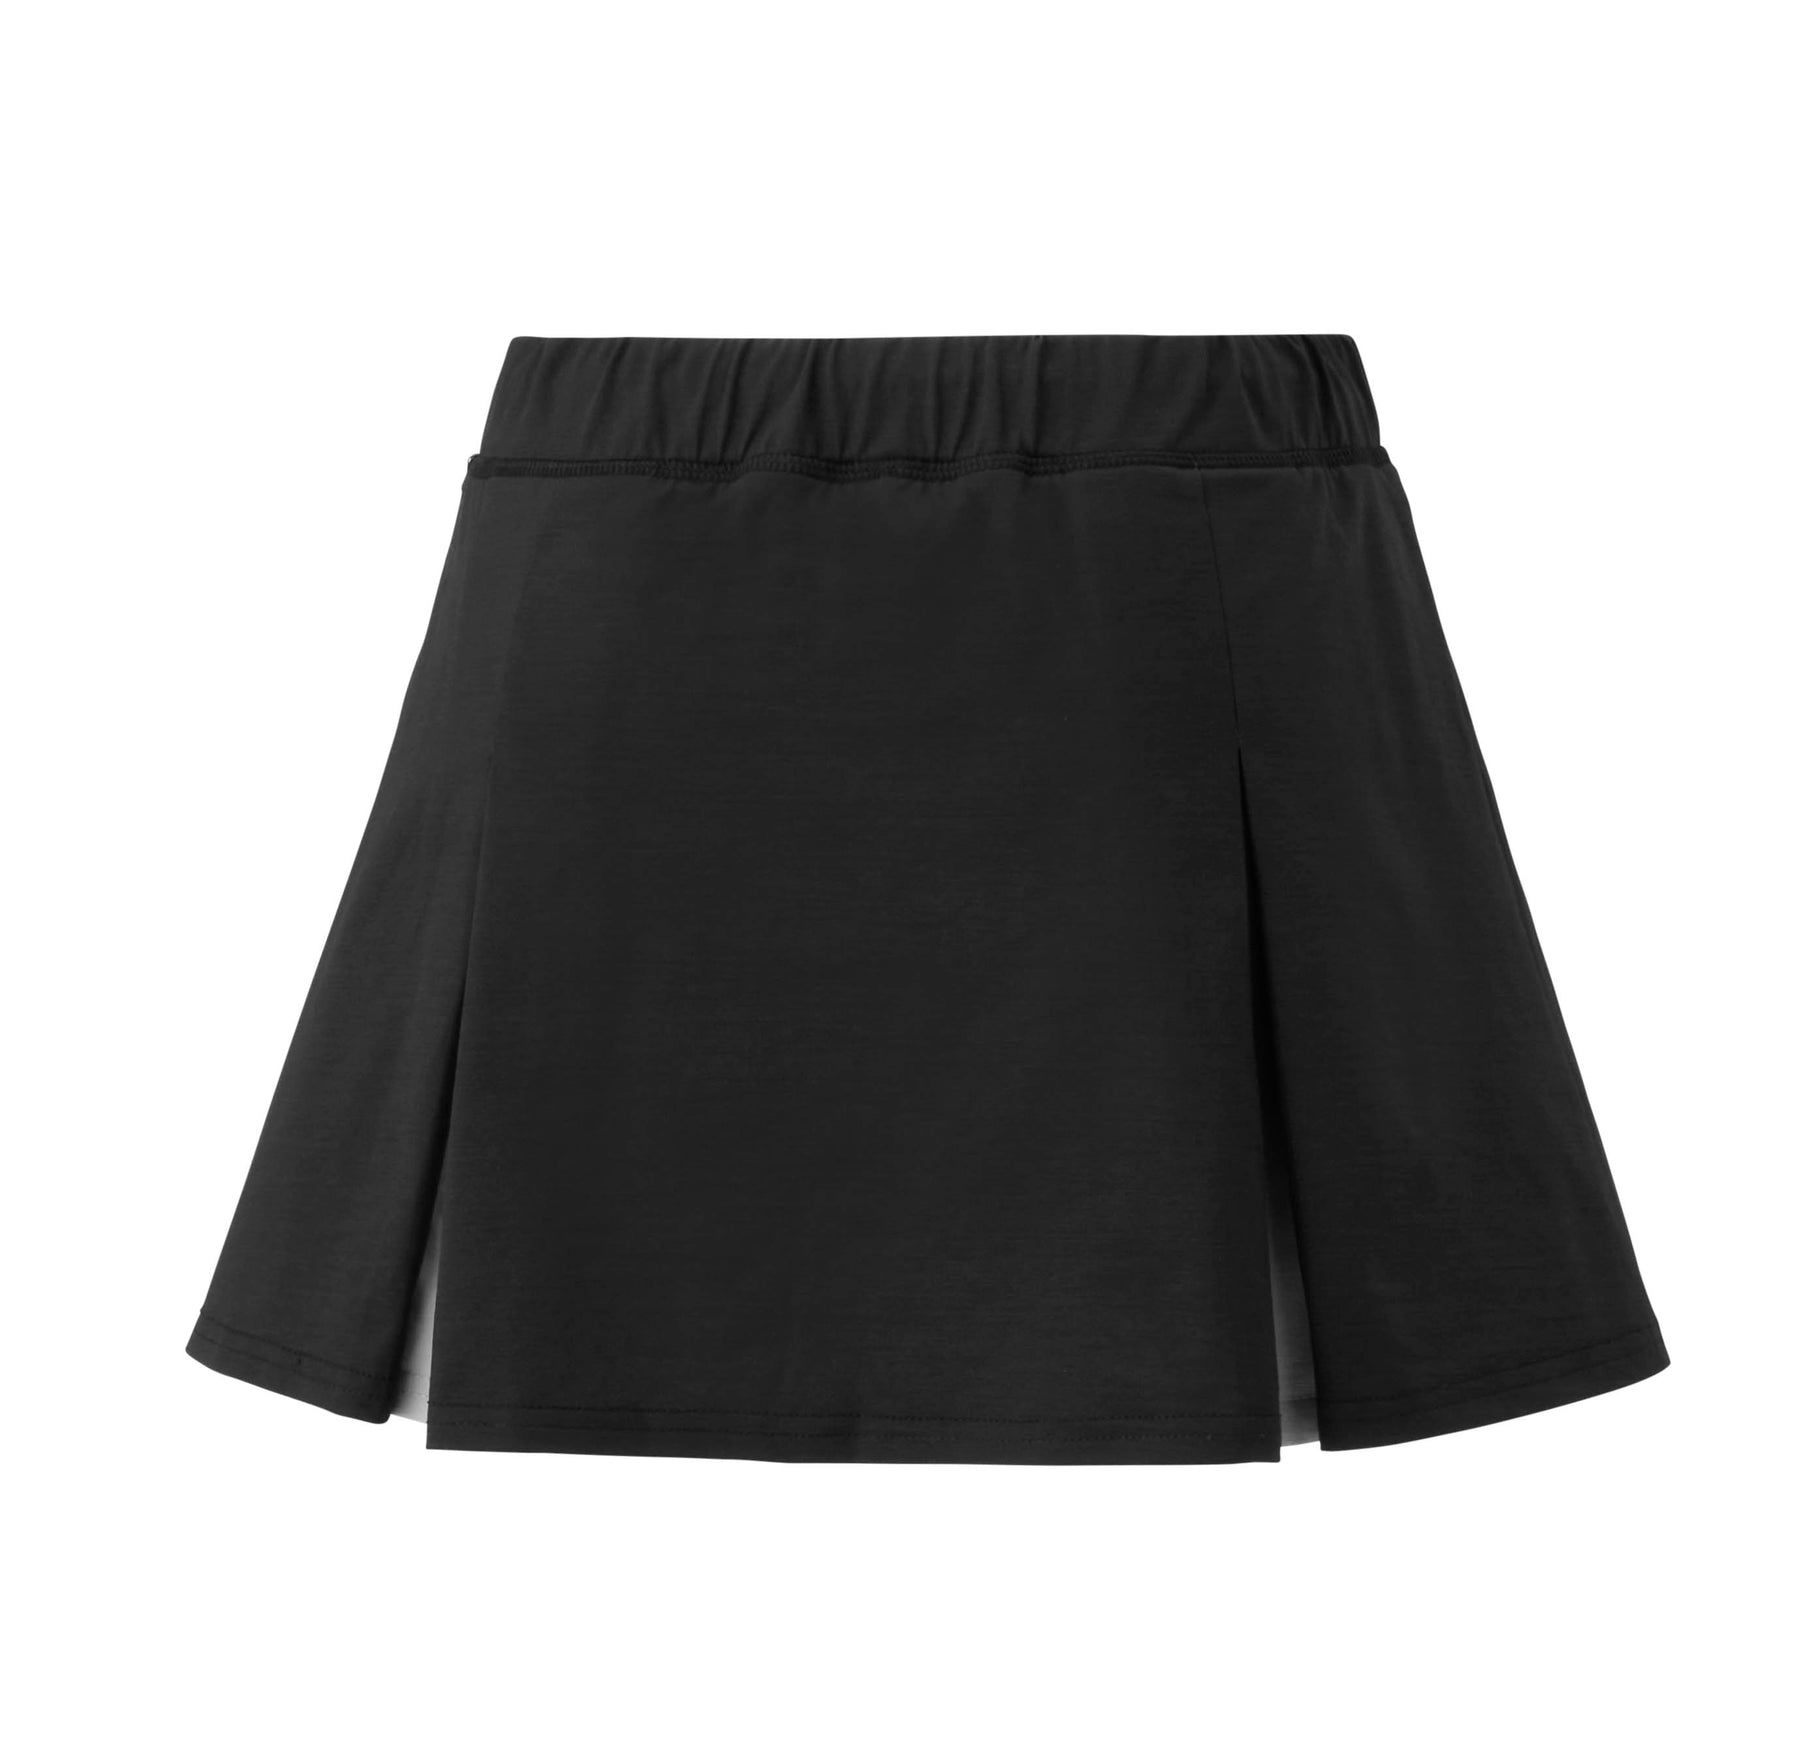 Yonex 26125 Skirt (With Inner Shorts) (Mist Blue)